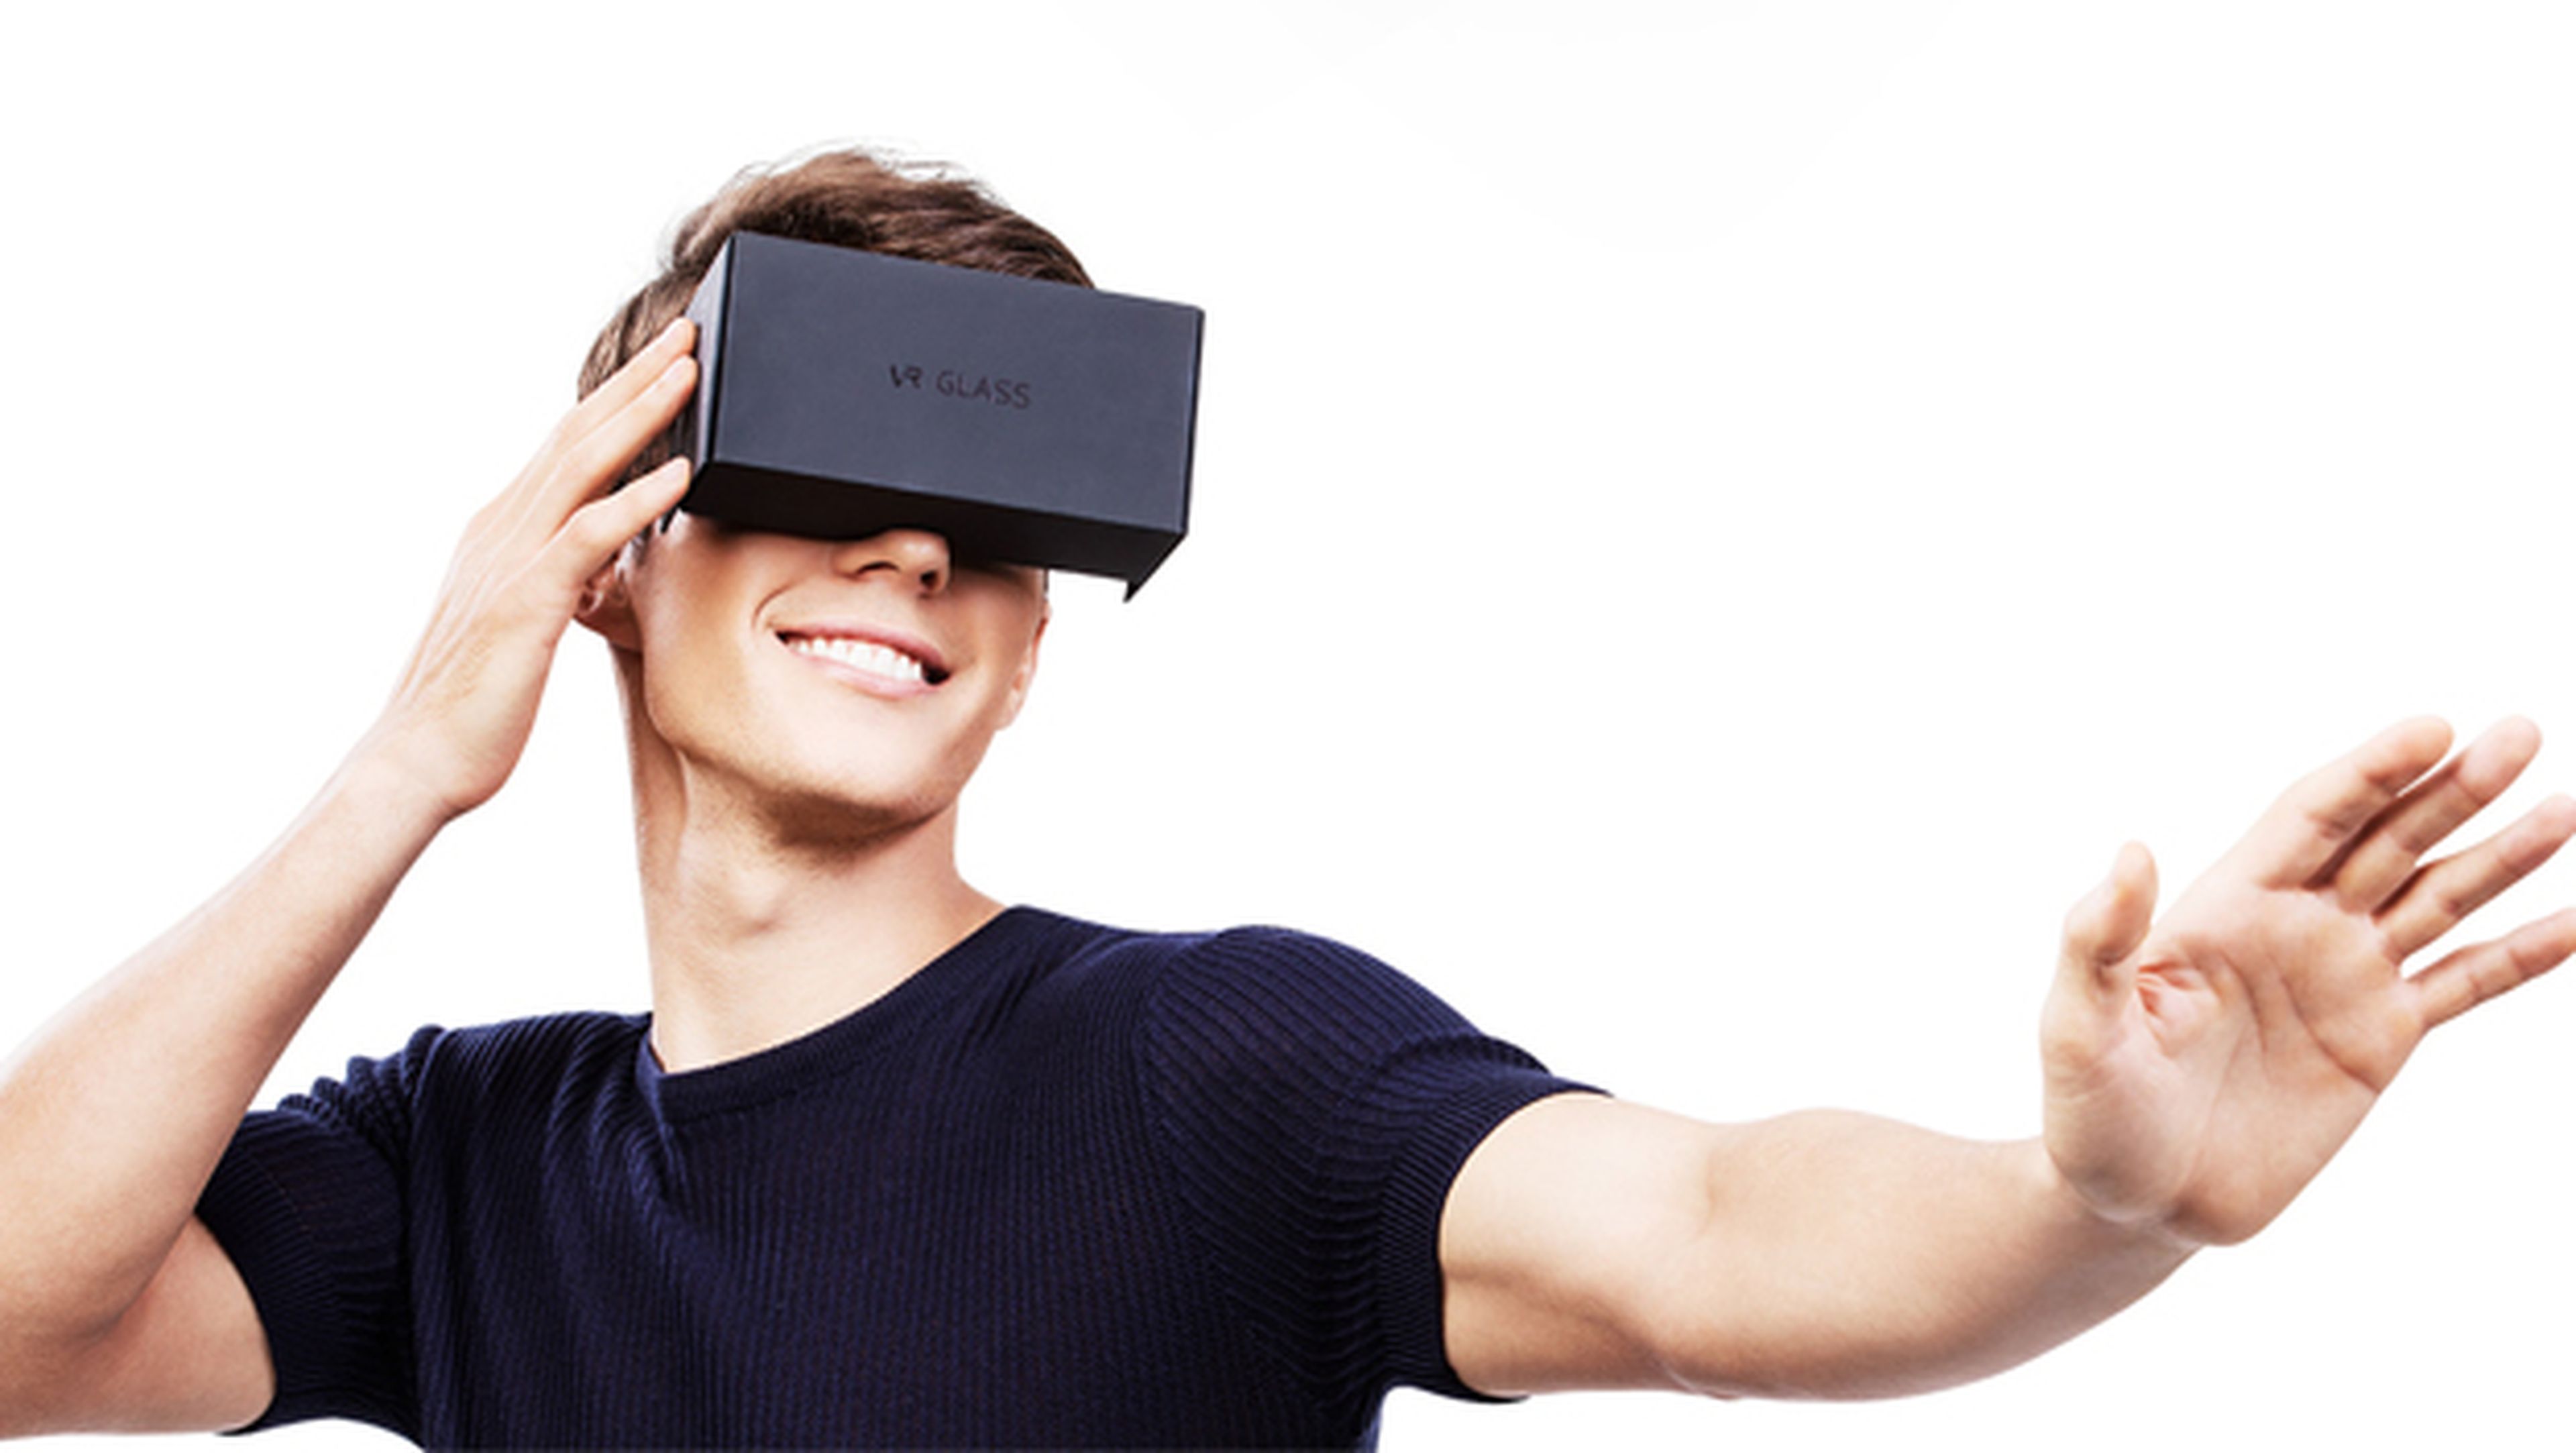 Llega el Honor V8, con cámara dual y gafas de realidad virtual